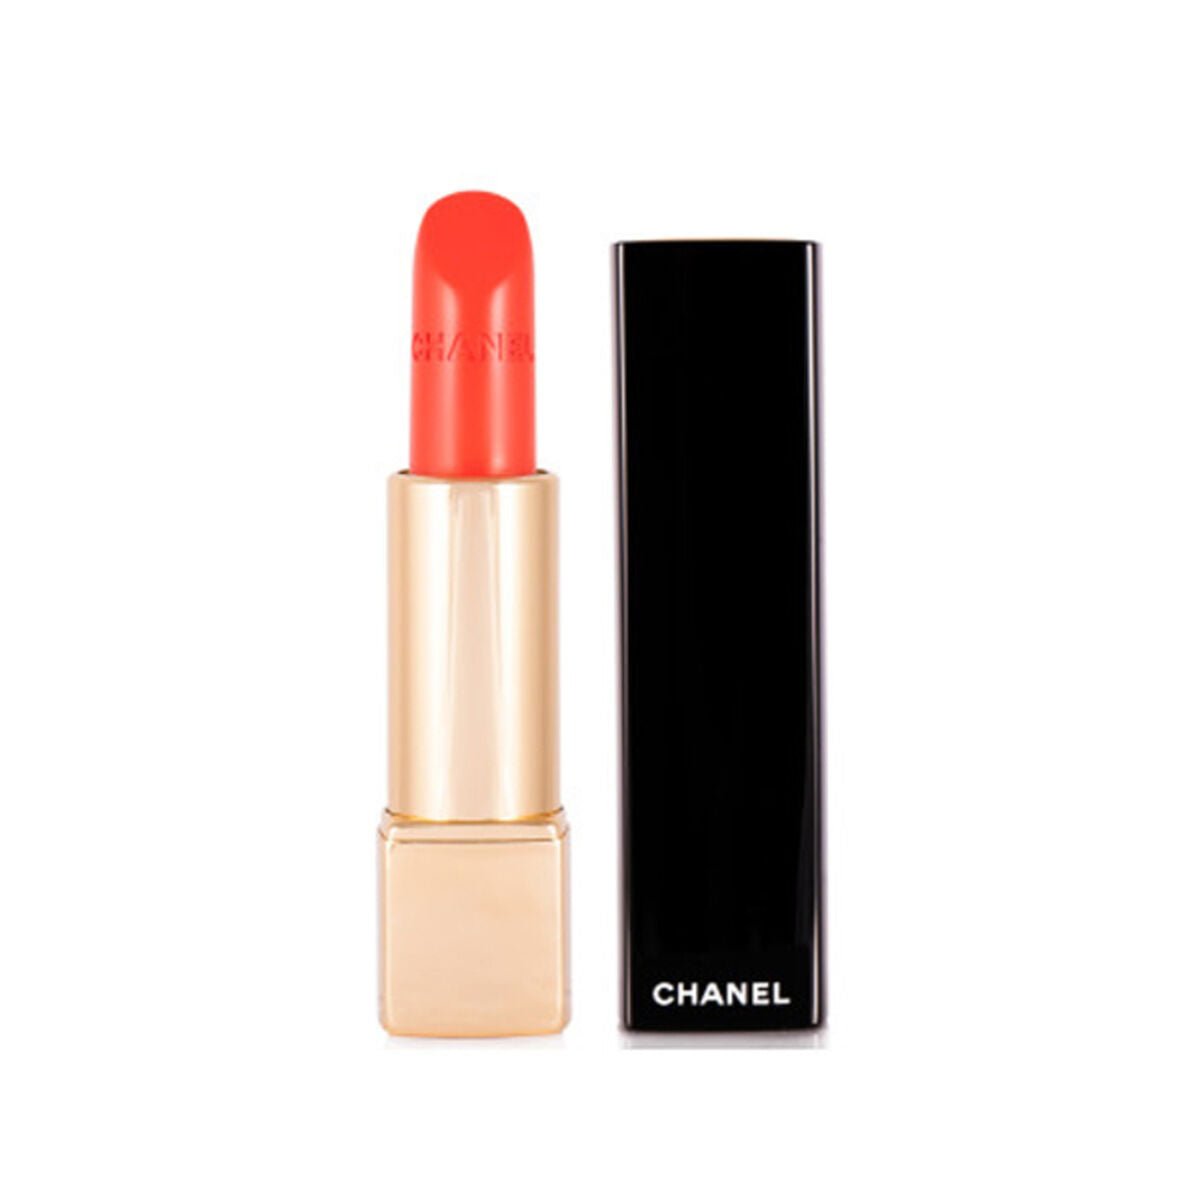 Chanel Rouge Allure Luminous Intense Lip Colour - # 152 Insaisissable  3.5g/0.12oz 